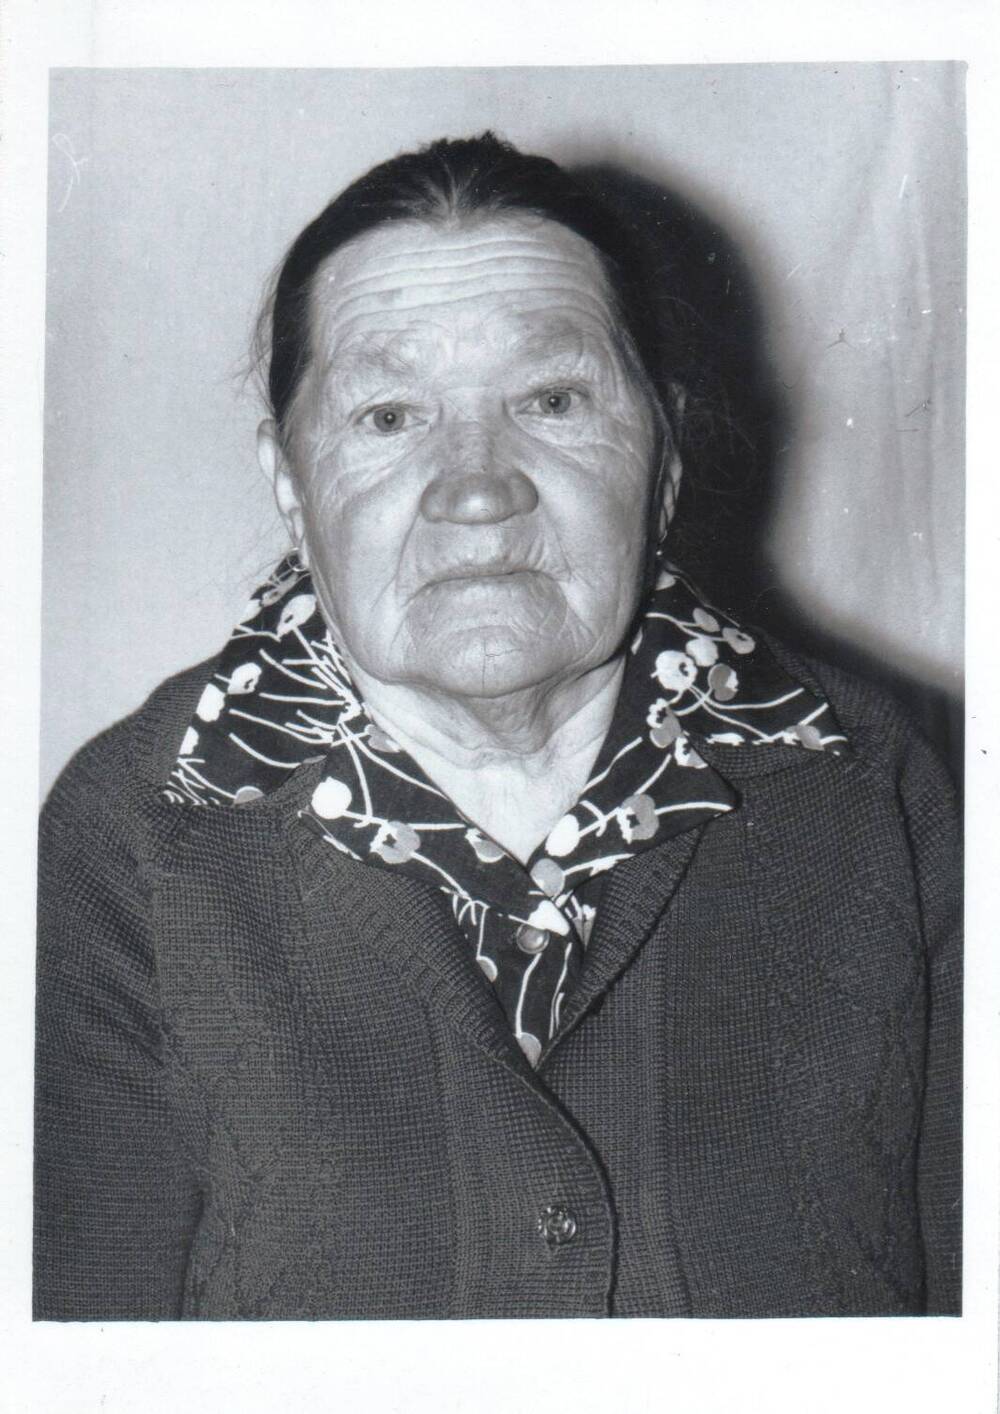 Фотопортрет погрудный. Лысенко Мария Павловна, 1924 г.р., труженица тыла